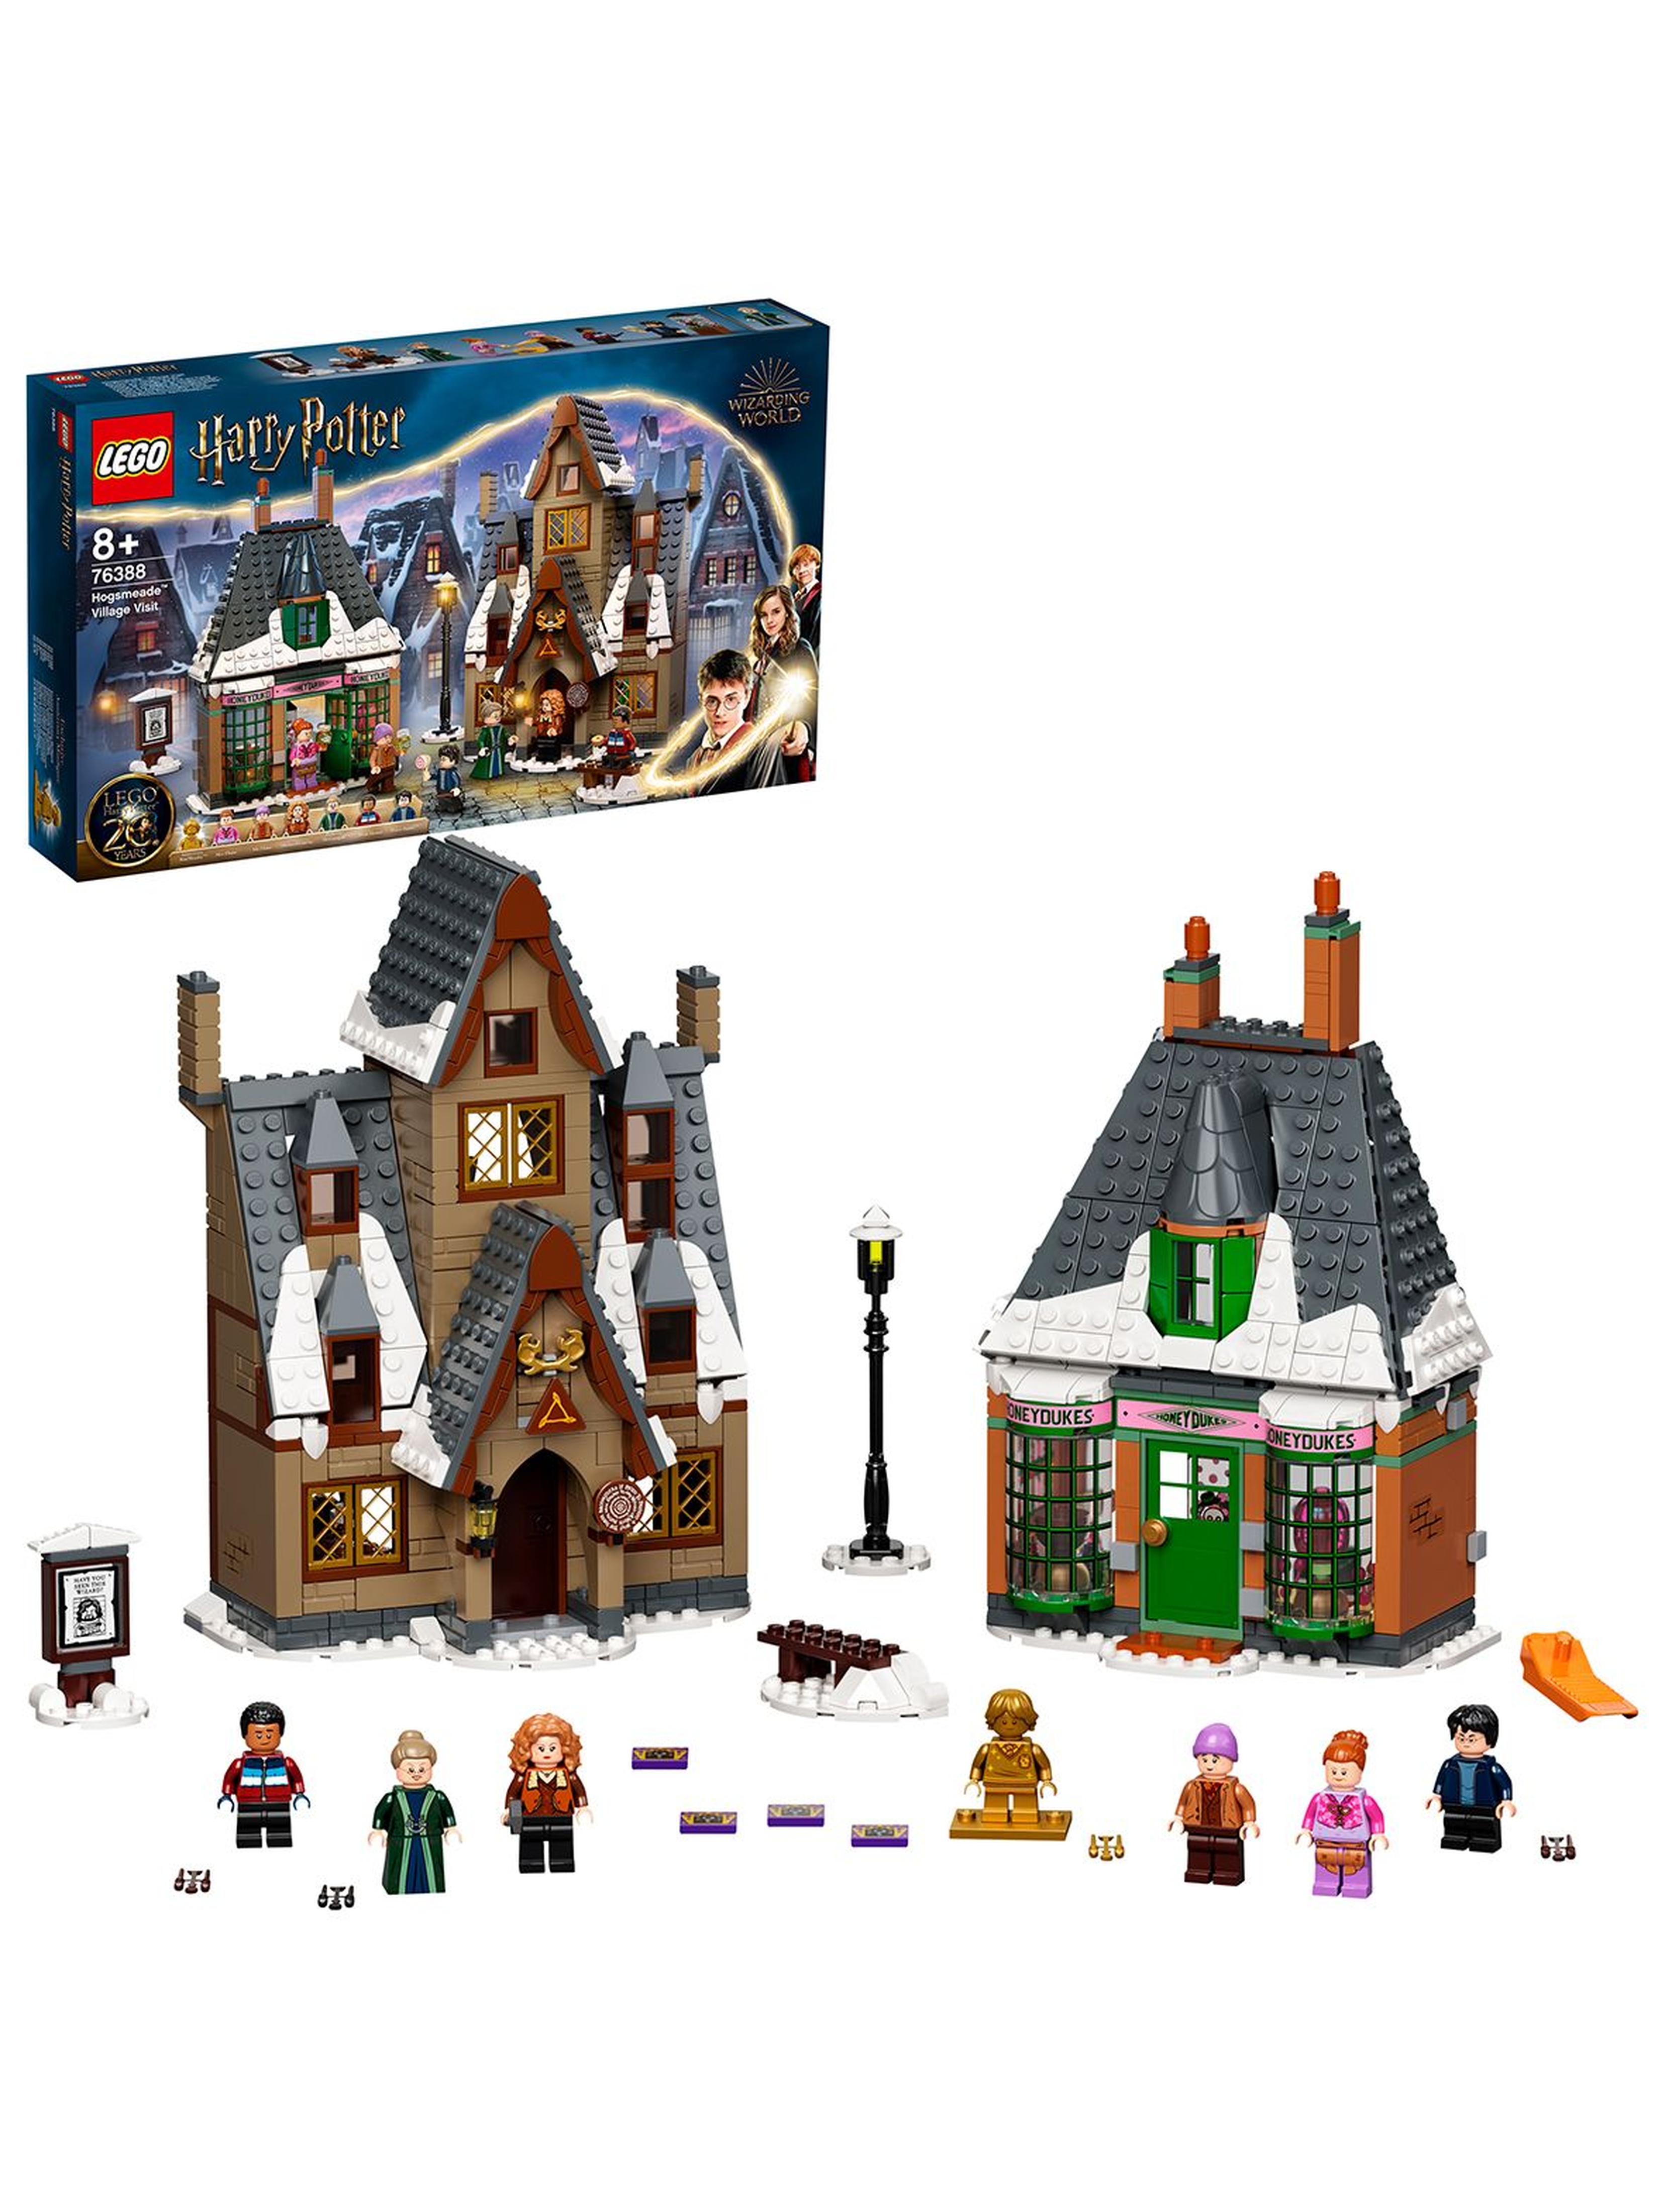 LEGO Harry Potter TM - Wizyta w wiosce Hogsmeade 76388 - 851 elementów, wiek 8+